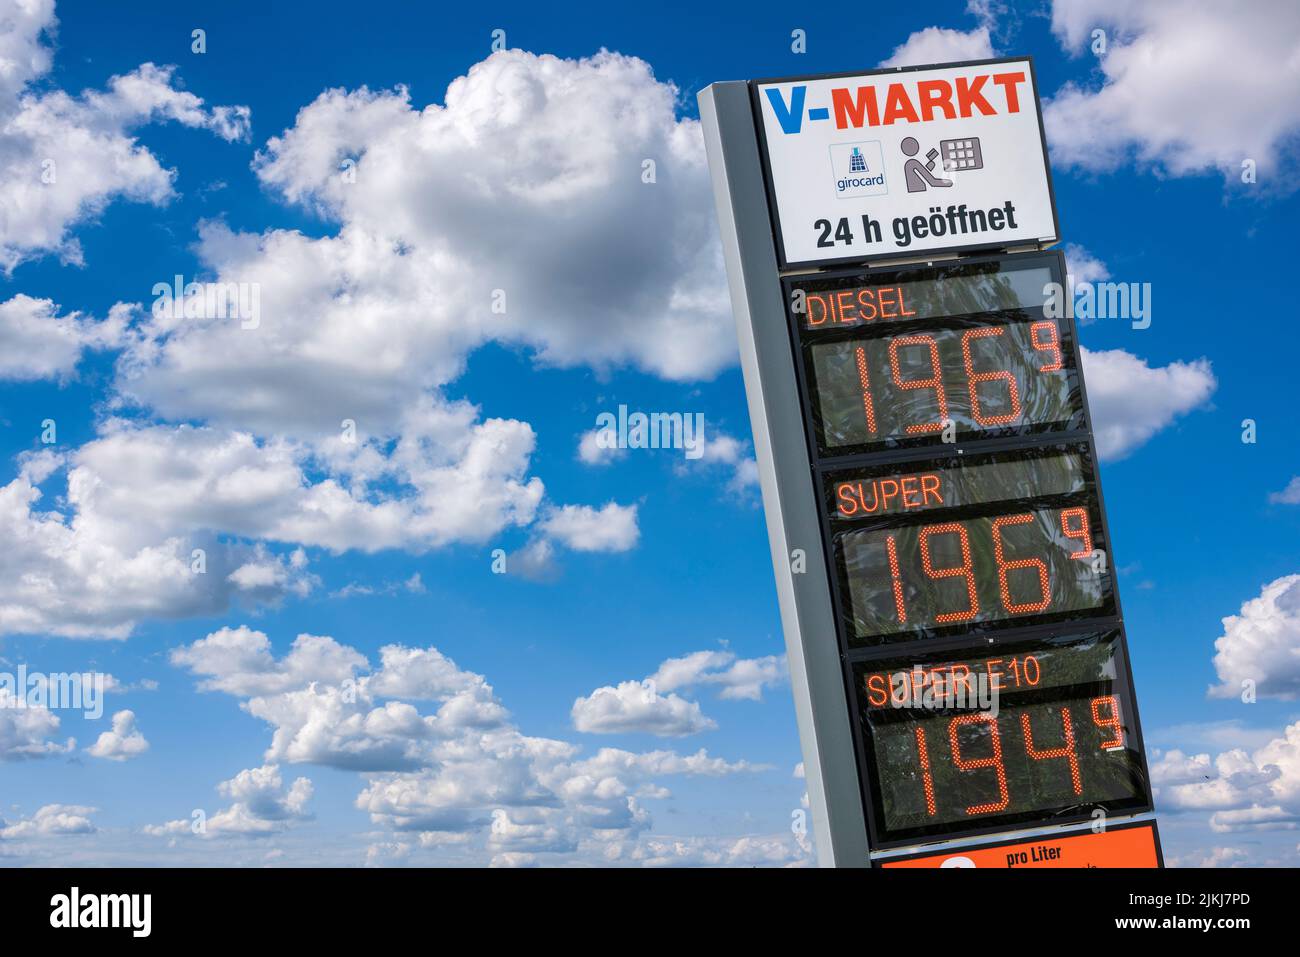 Visualizzazione dei prezzi presso la stazione di servizio presso il V-Markt di Schwabmünchen Foto Stock